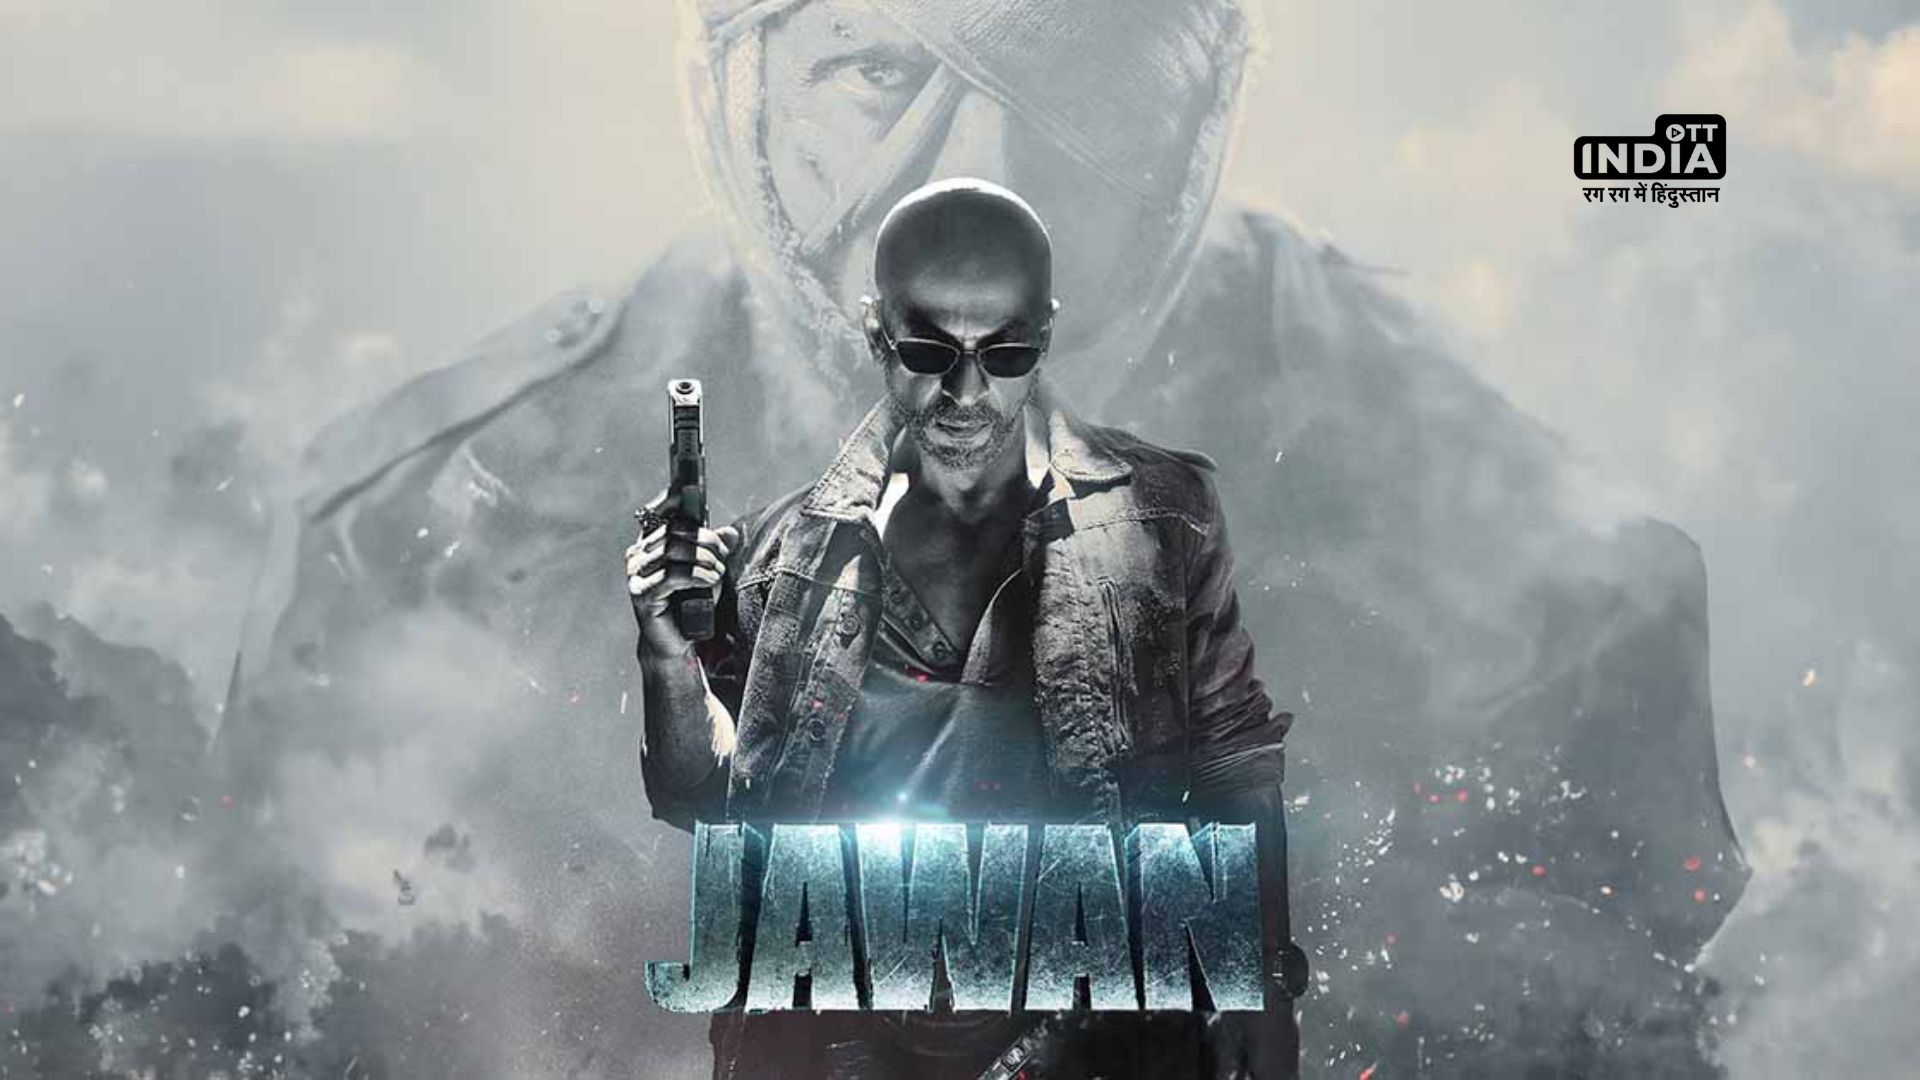 Jawan Box Office: Shah Rukh Khan की जवान तीसरी ऐसी हिंदी फिल्म जिसने 300 करोड़ का आकड़ा किया पार